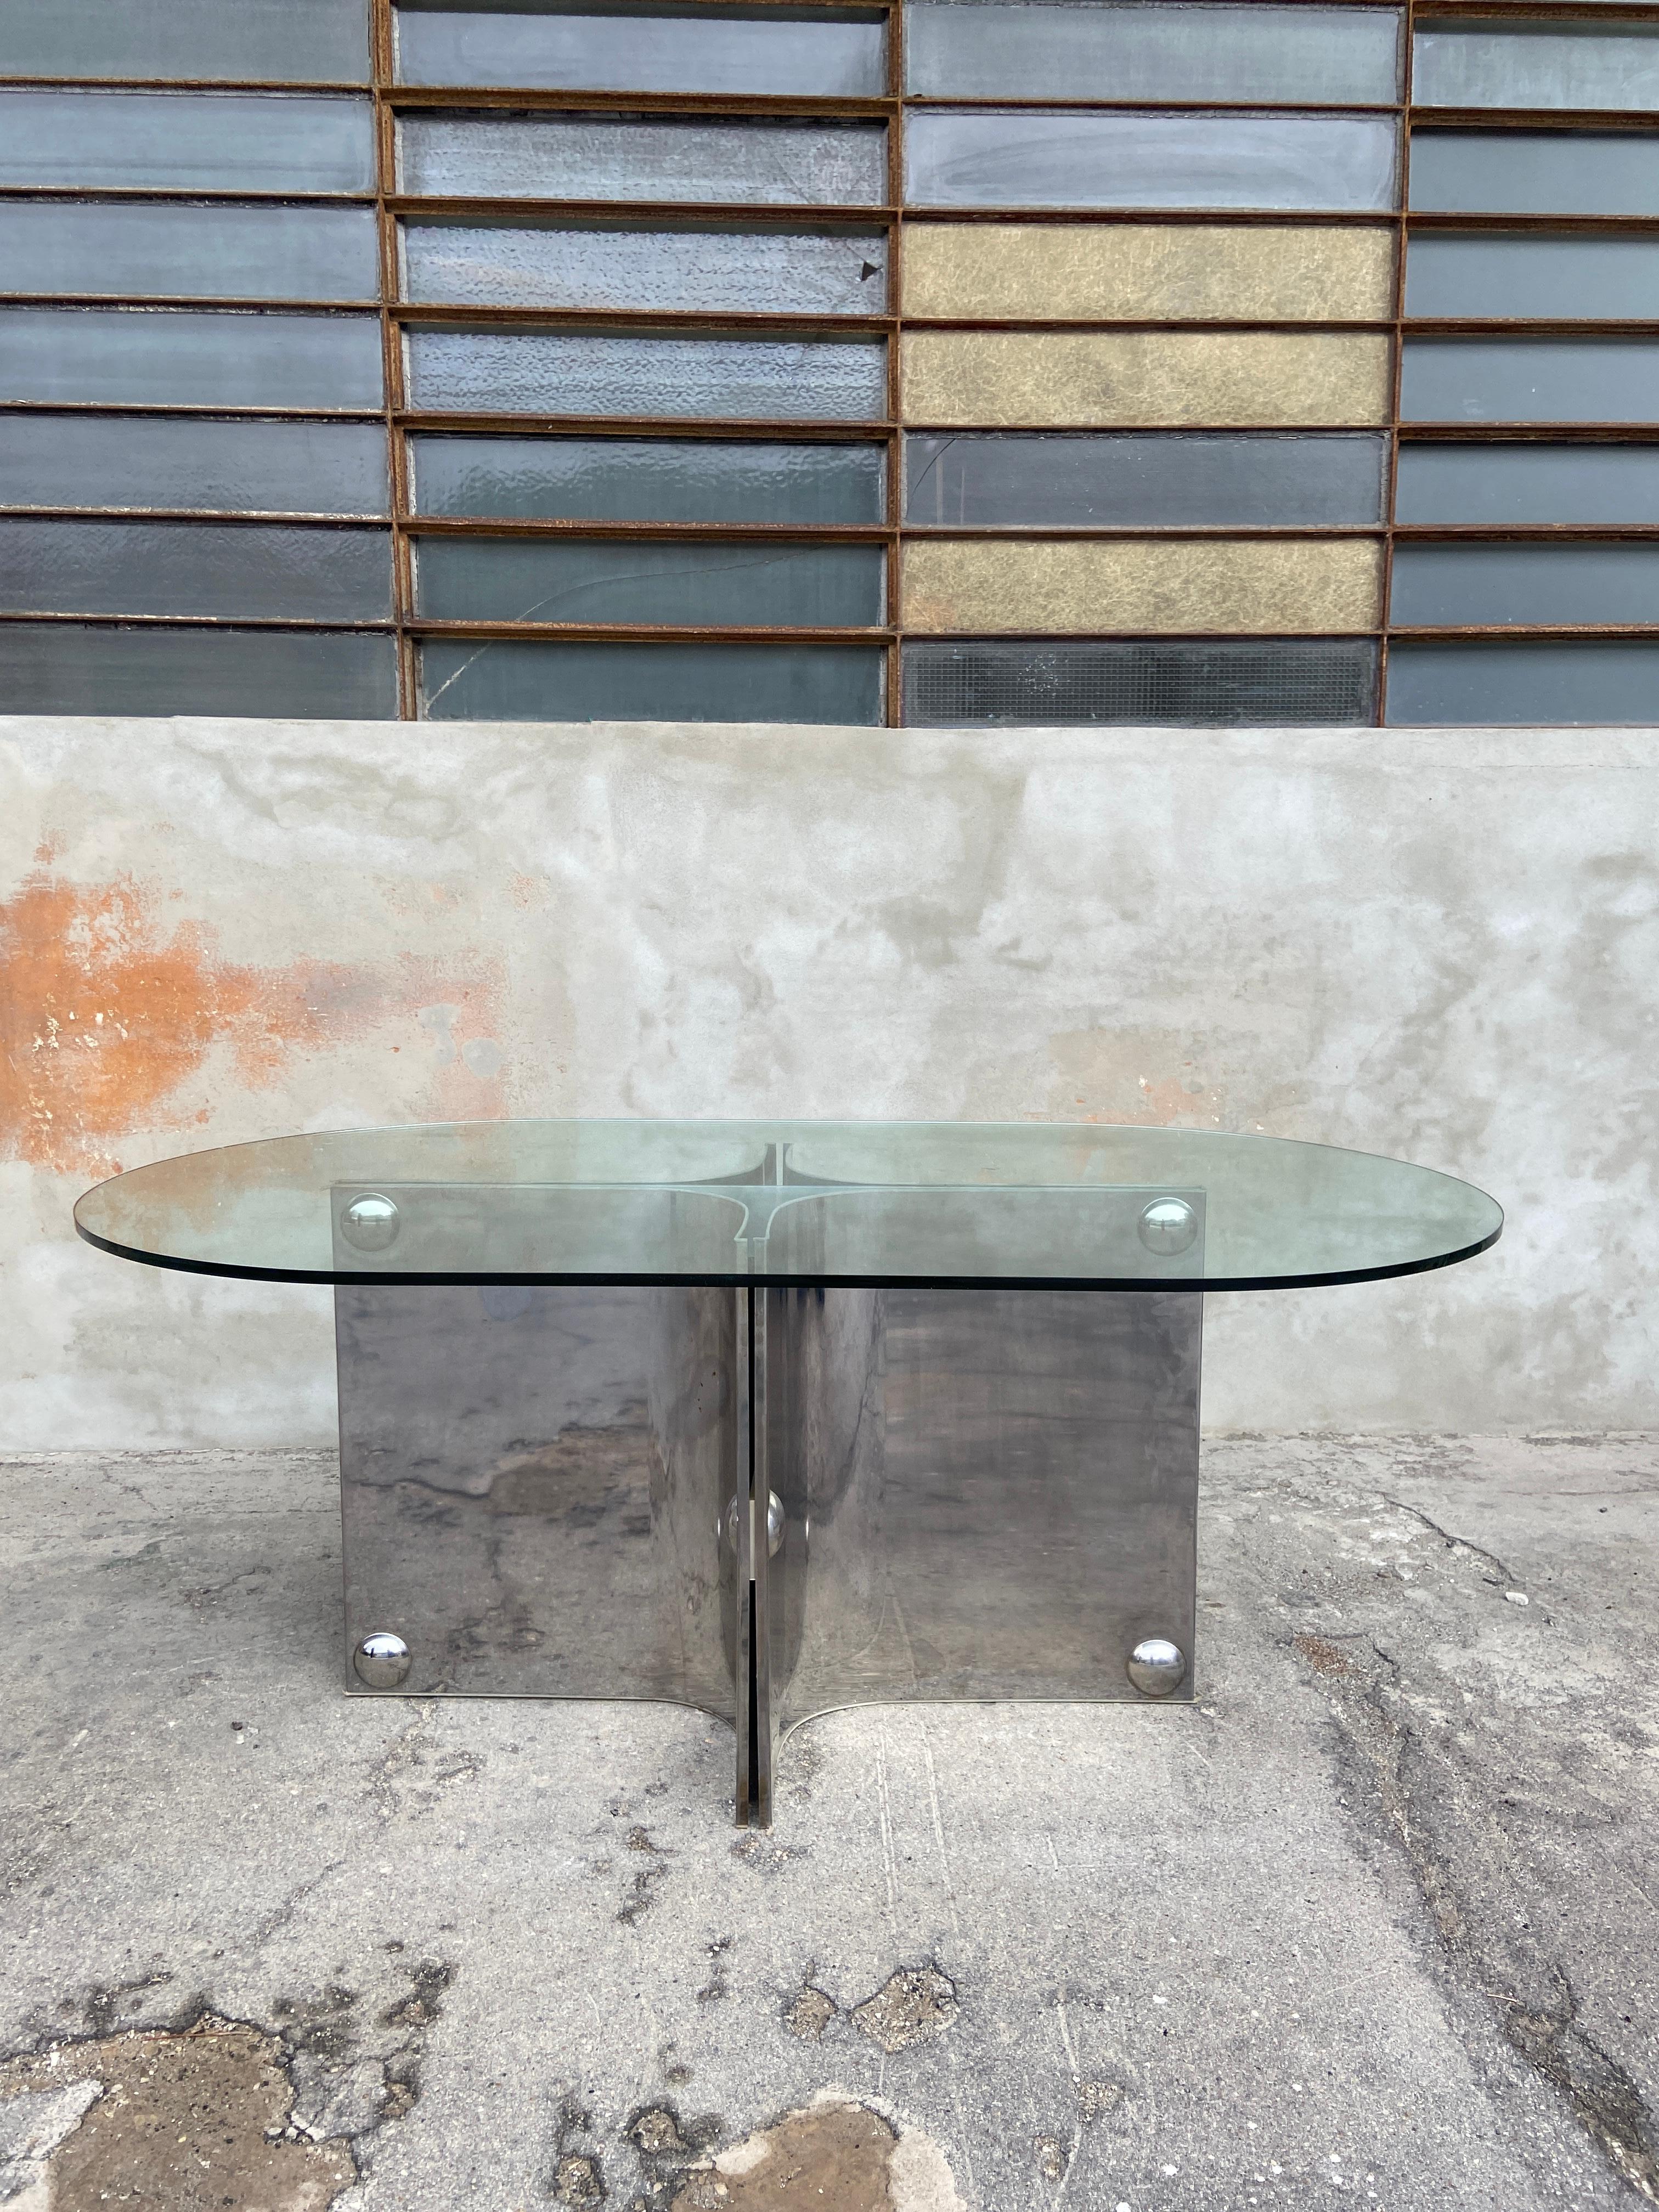 Table de salle à manger ou table centrale italienne du milieu du siècle, avec soubassement en acier inoxydable et plateau en verre, par Vittorio Introini.
La table est dans un très bon état d'origine.